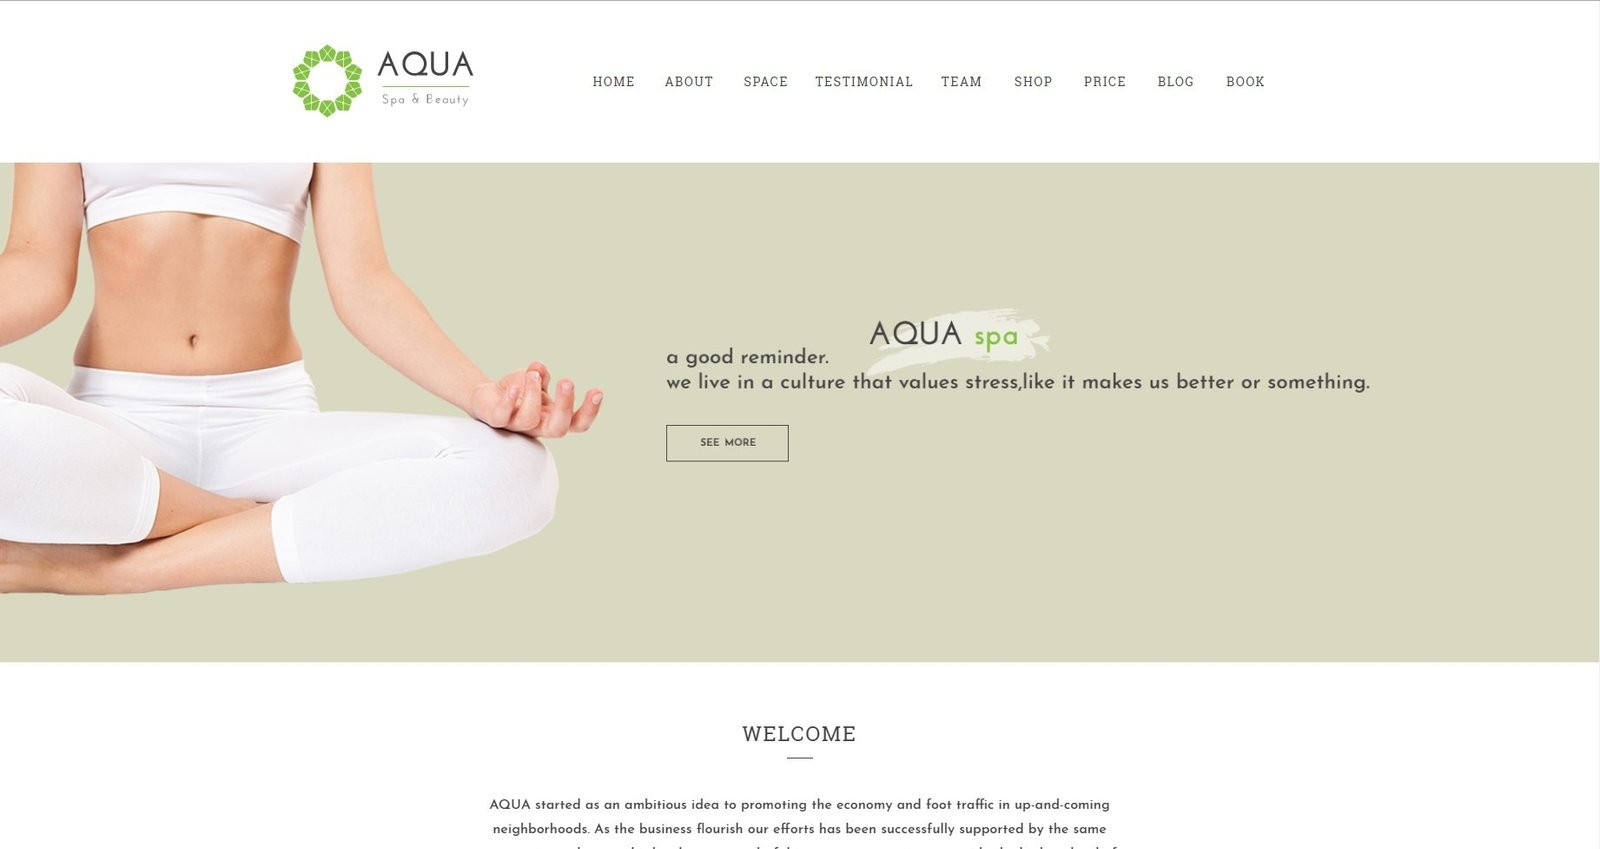 Aqua - Spa and Beauty HTML5 Template